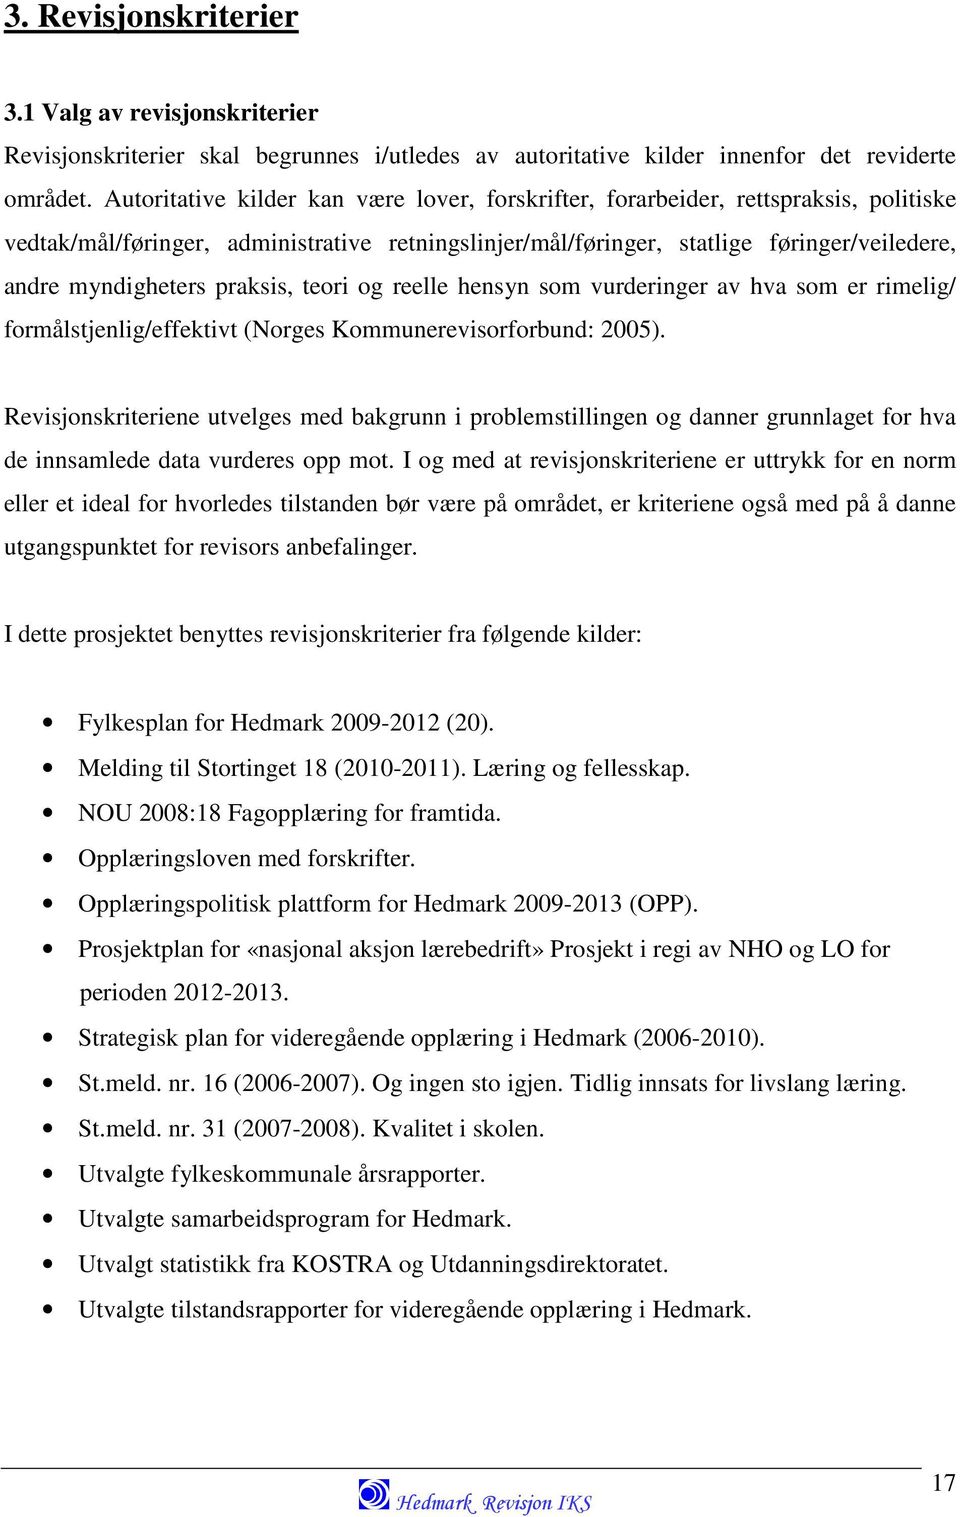 praksis, teori og reelle hensyn som vurderinger av hva som er rimelig/ formålstjenlig/effektivt (Norges Kommunerevisorforbund: 2005).